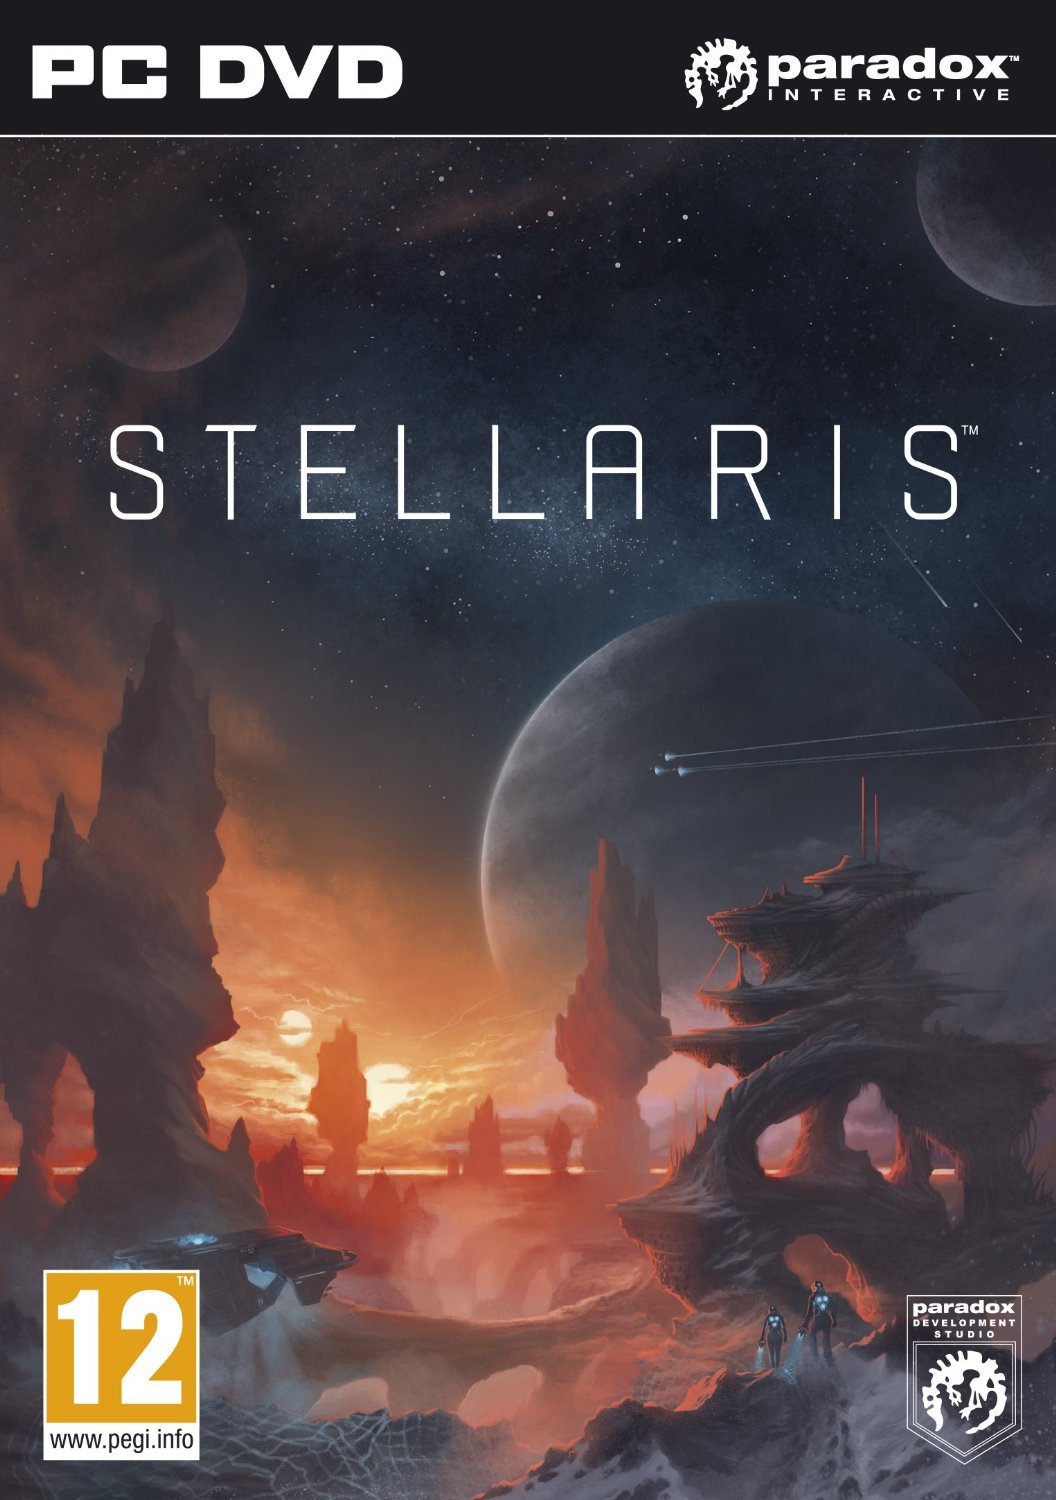 stellaris 3.4 download